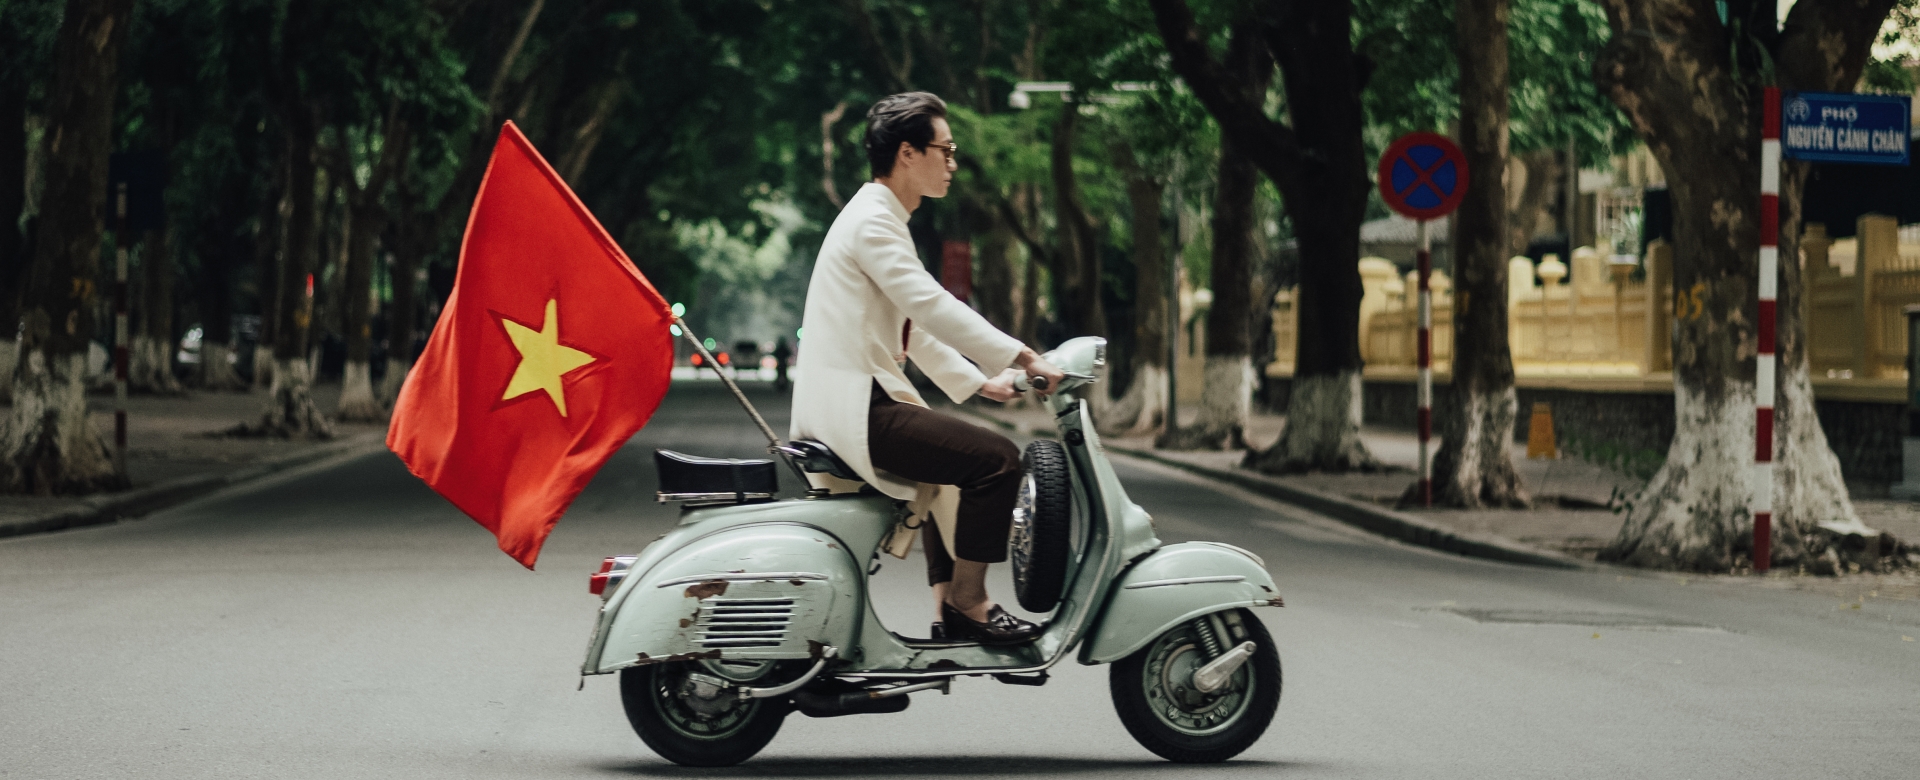 Thương hiệu Maison LONG: “Các bạn trẻ là người có thể mang vẻ đẹp truyền thống Việt Nam đến thế giới”